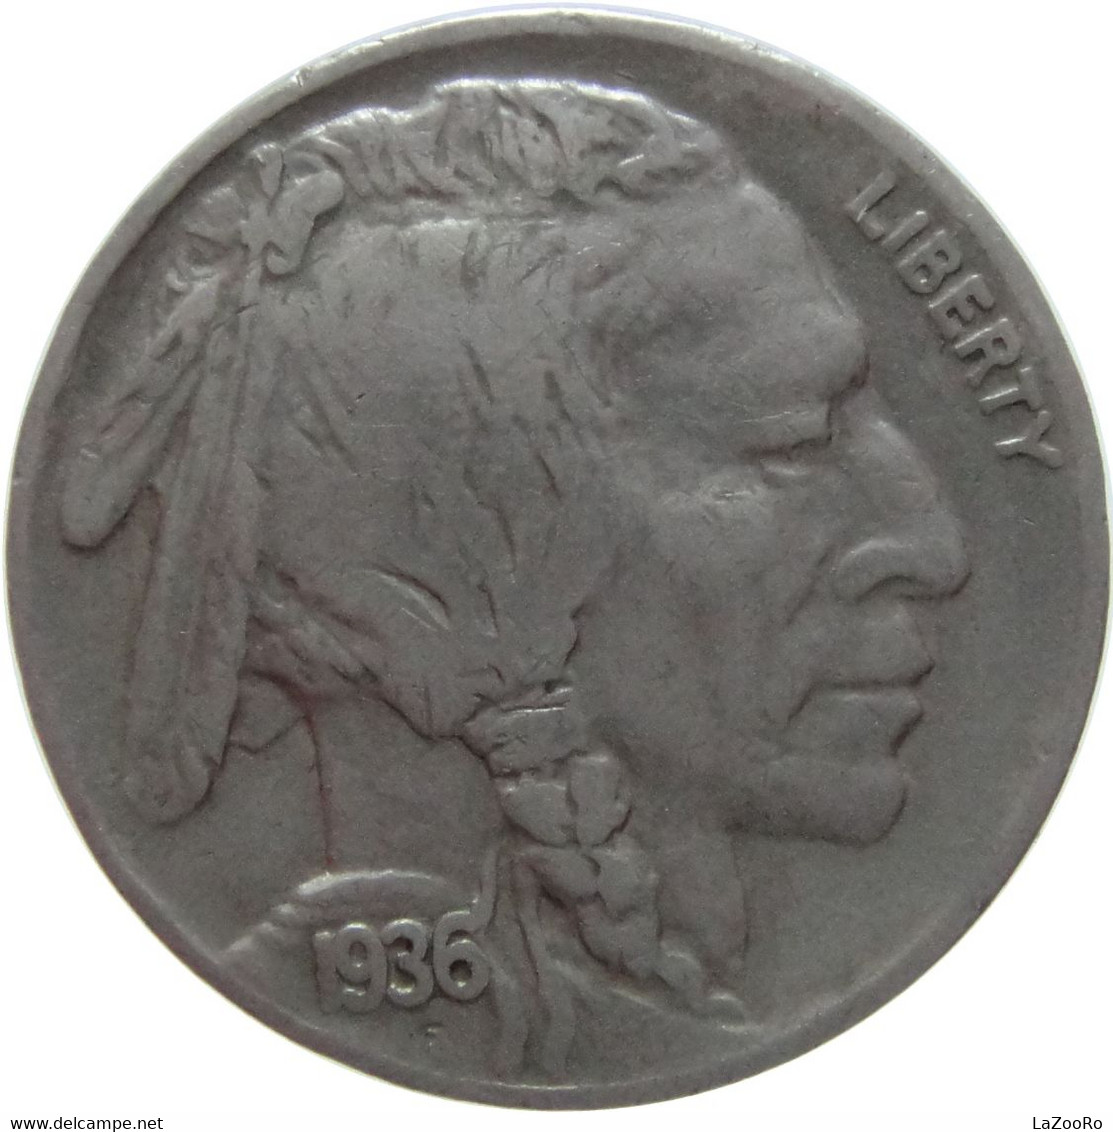 LaZooRo: United States 5 Cents 1936 XF - 1913-1938: Buffalo